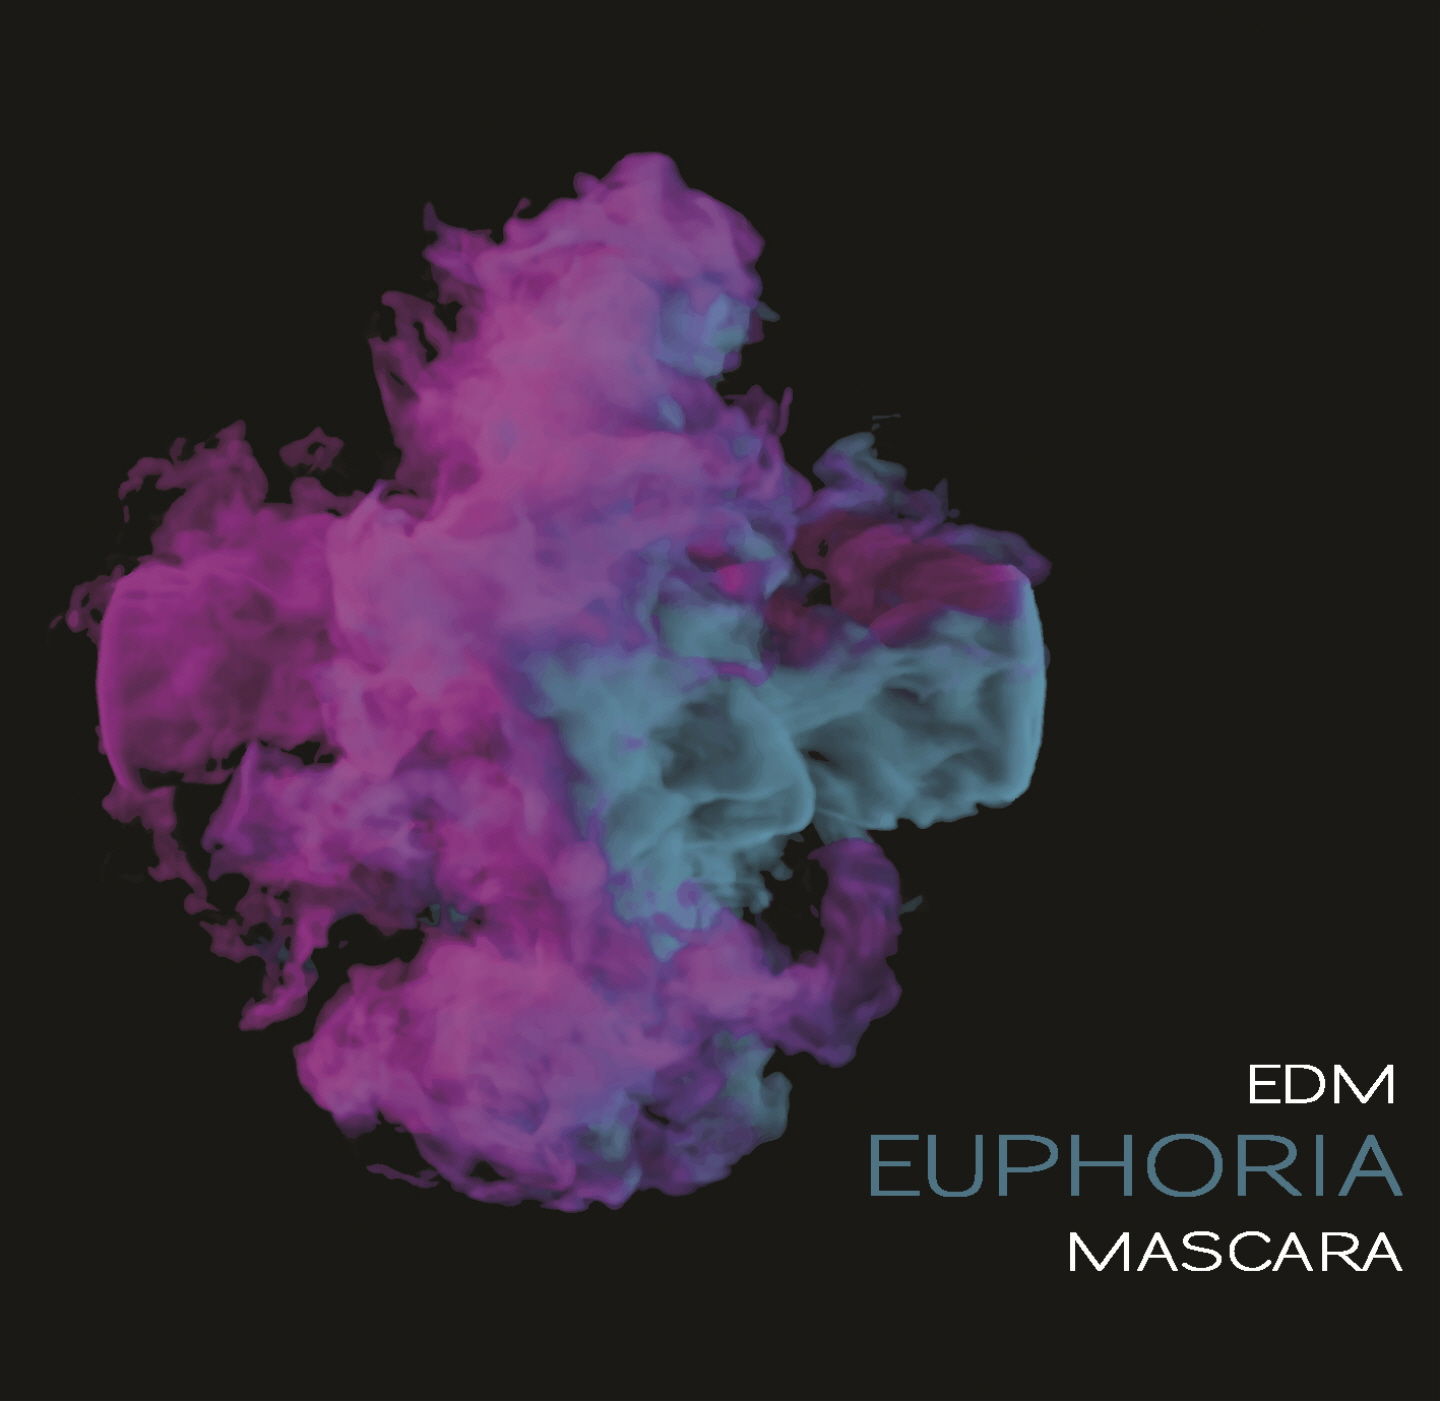 EDM Euphoria - MASCARA (클럽, 비트, 신남, EDM, 일렉, 매장)